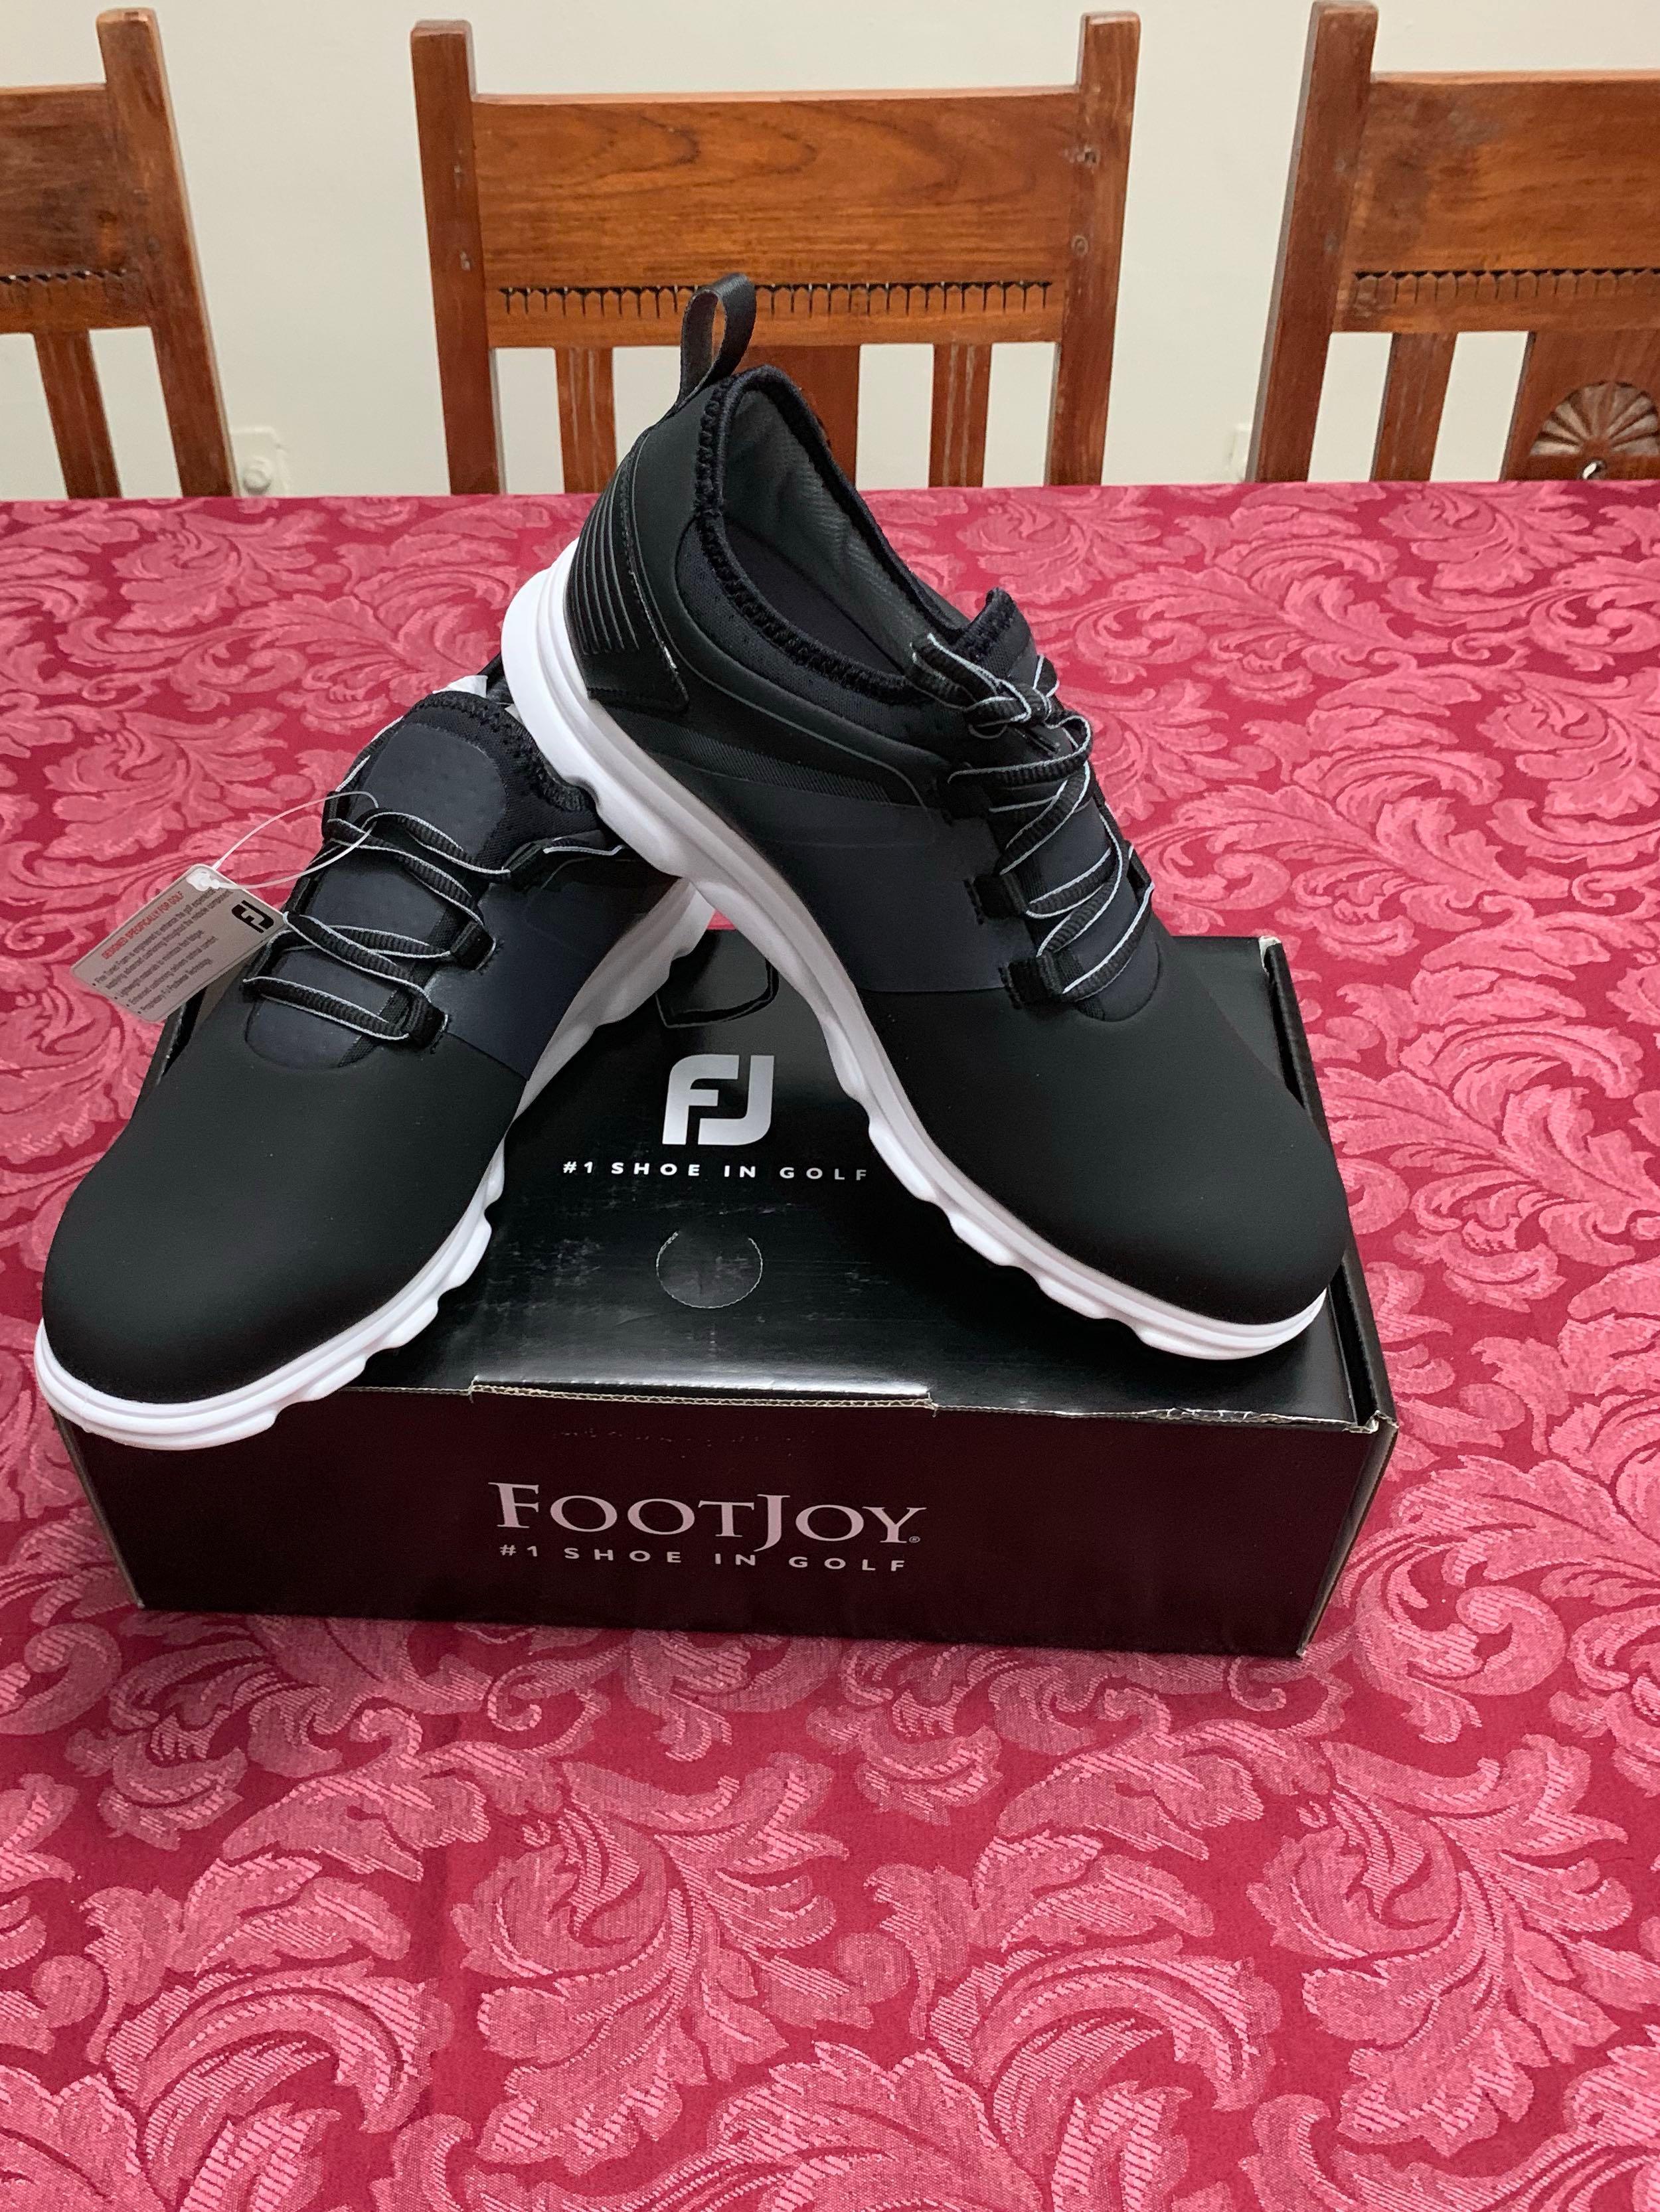 footjoy men's superlites xp golf shoes